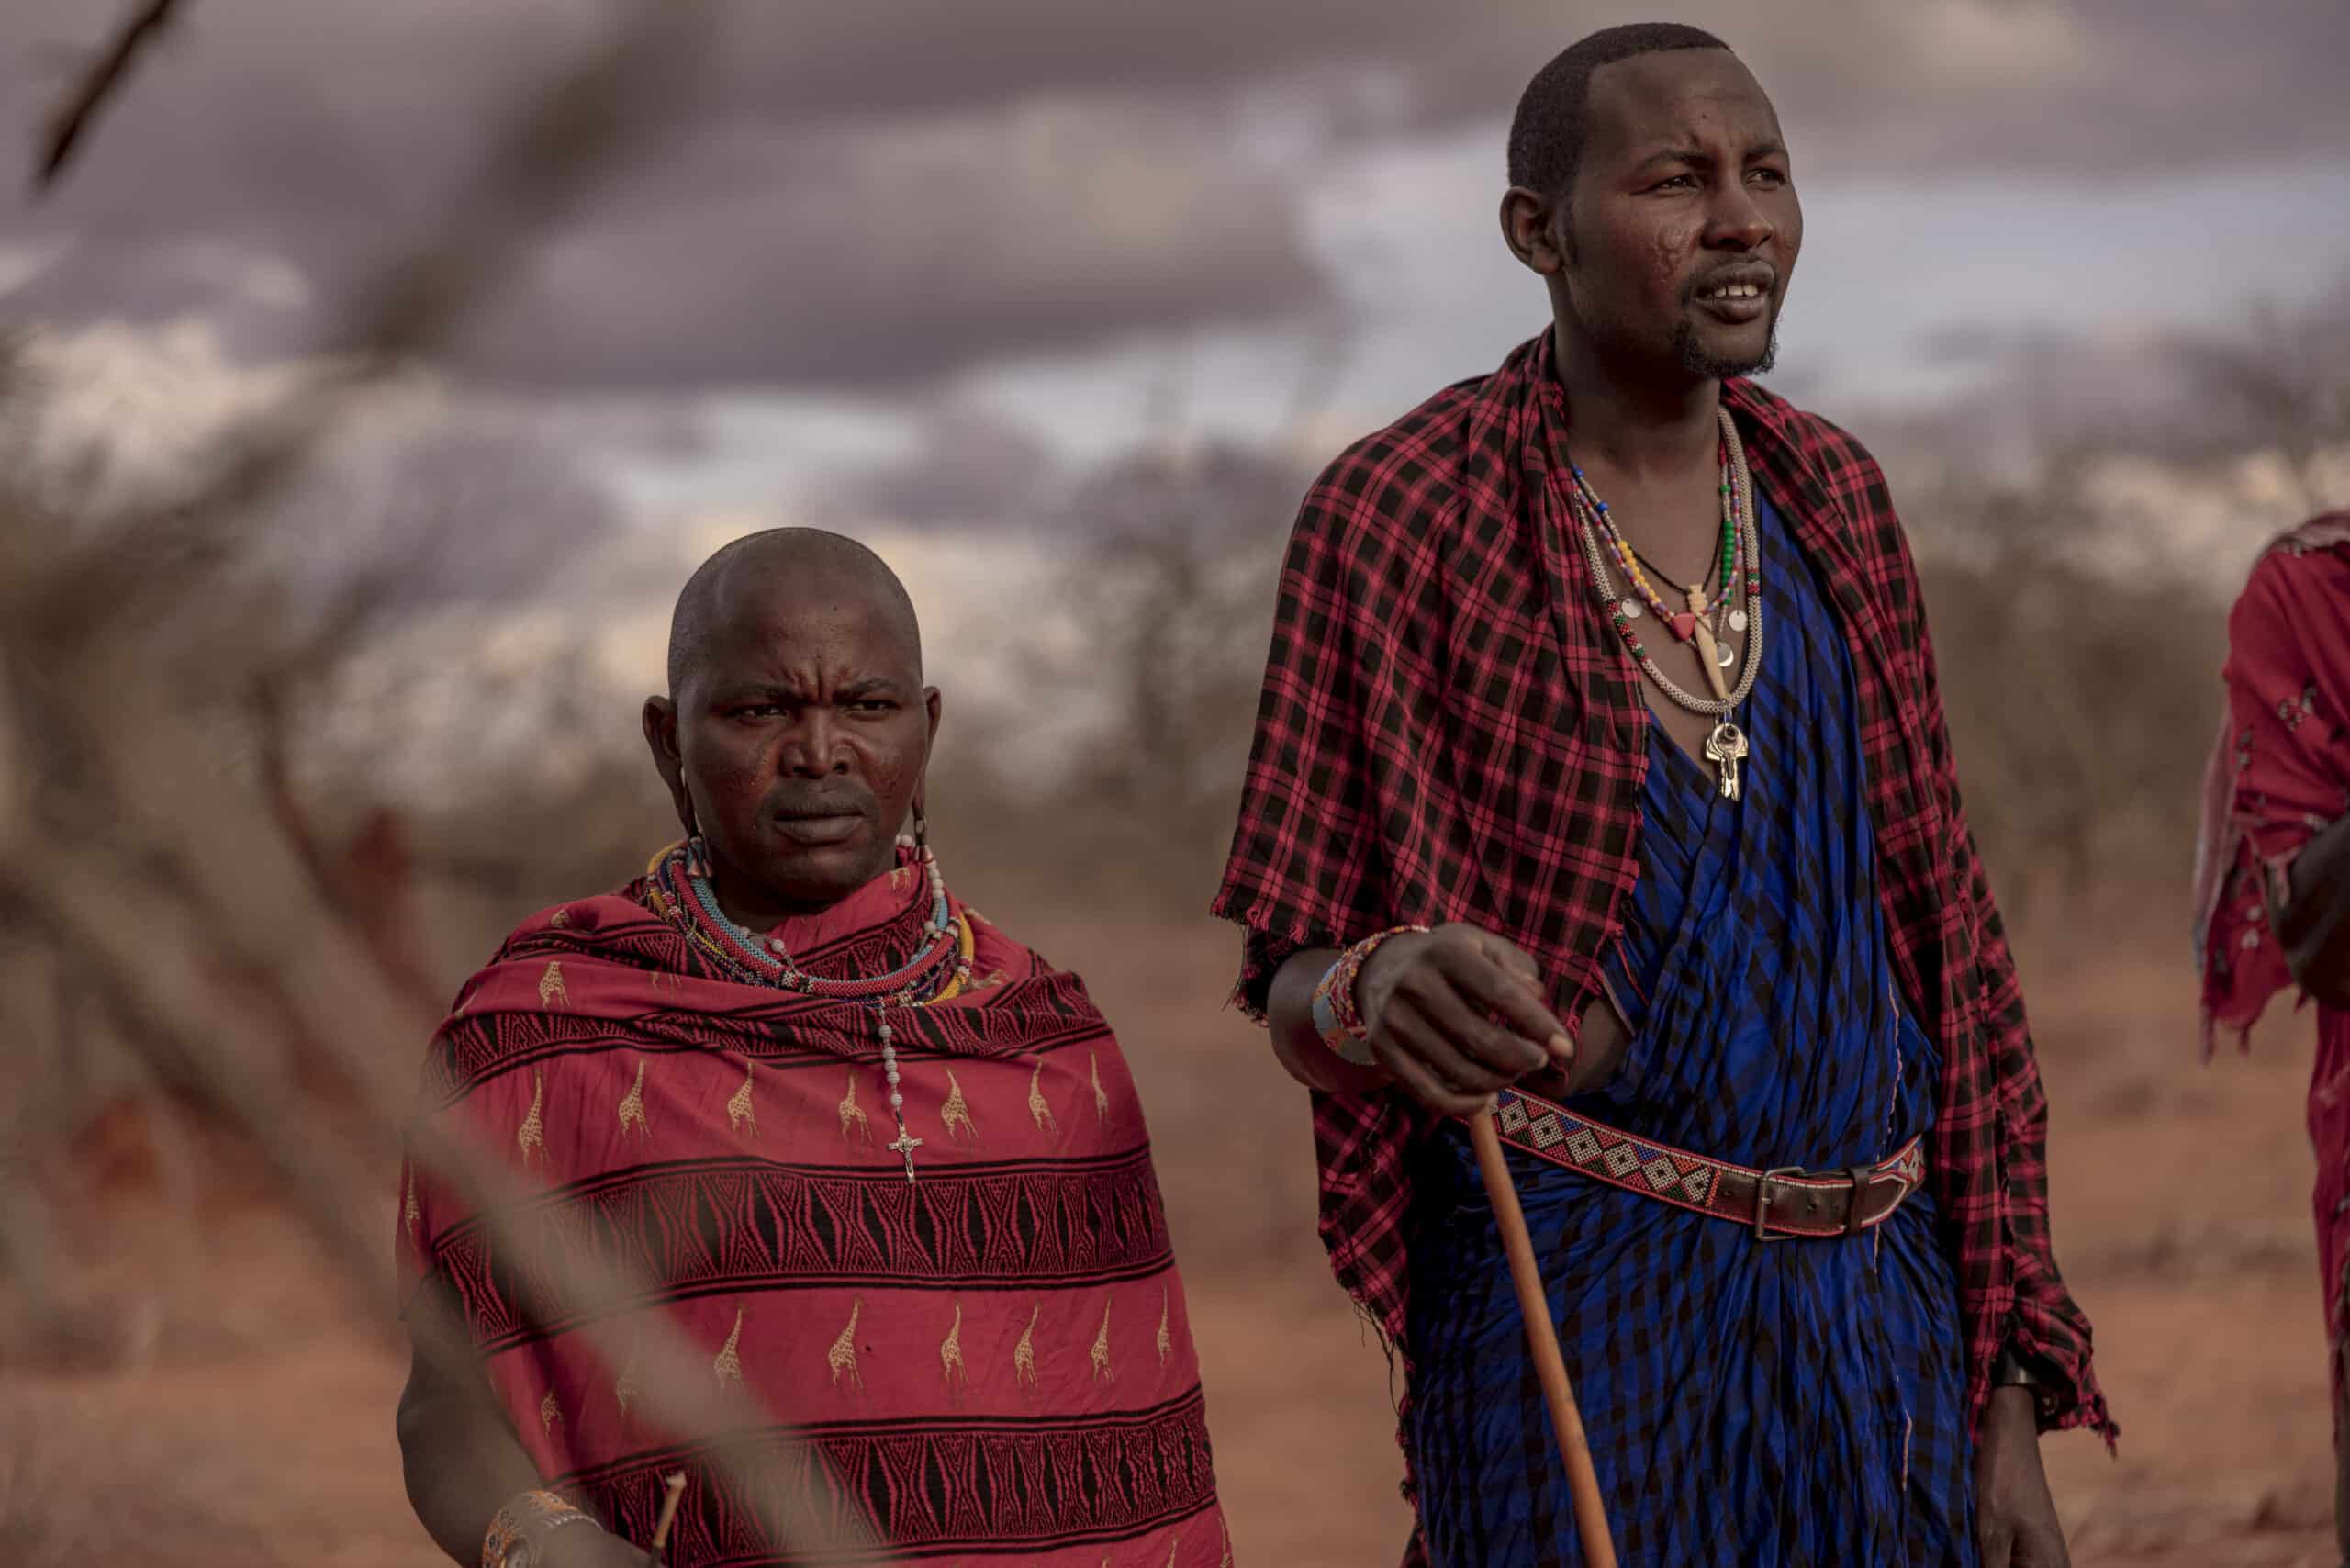 Zwei Massai-Männer in traditioneller Kleidung stehen an einem bewölkten Tag im Freien. Einer trägt einen roten und der andere einen blauen Shuka mit Perlenschmuck, blickt in die Ferne und verkörpert eine starke kulturelle Präsenz. © Fotografie Tomas Rodriguez